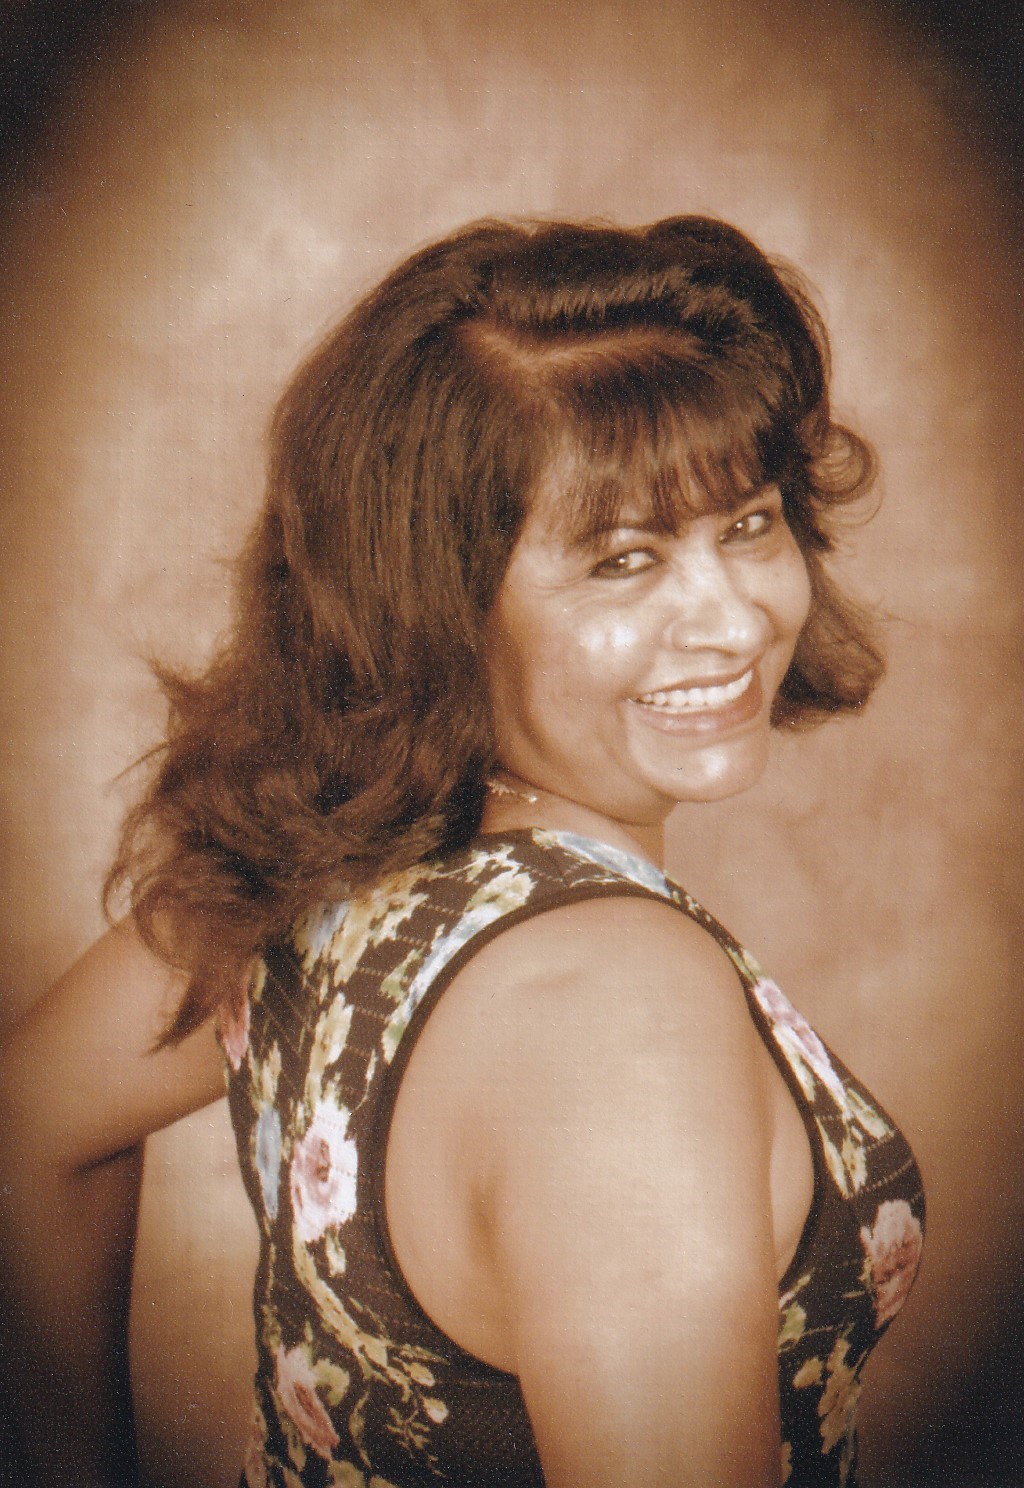 Obituary of Angela Caseres Barahona - March 15, 2023 - From the Family